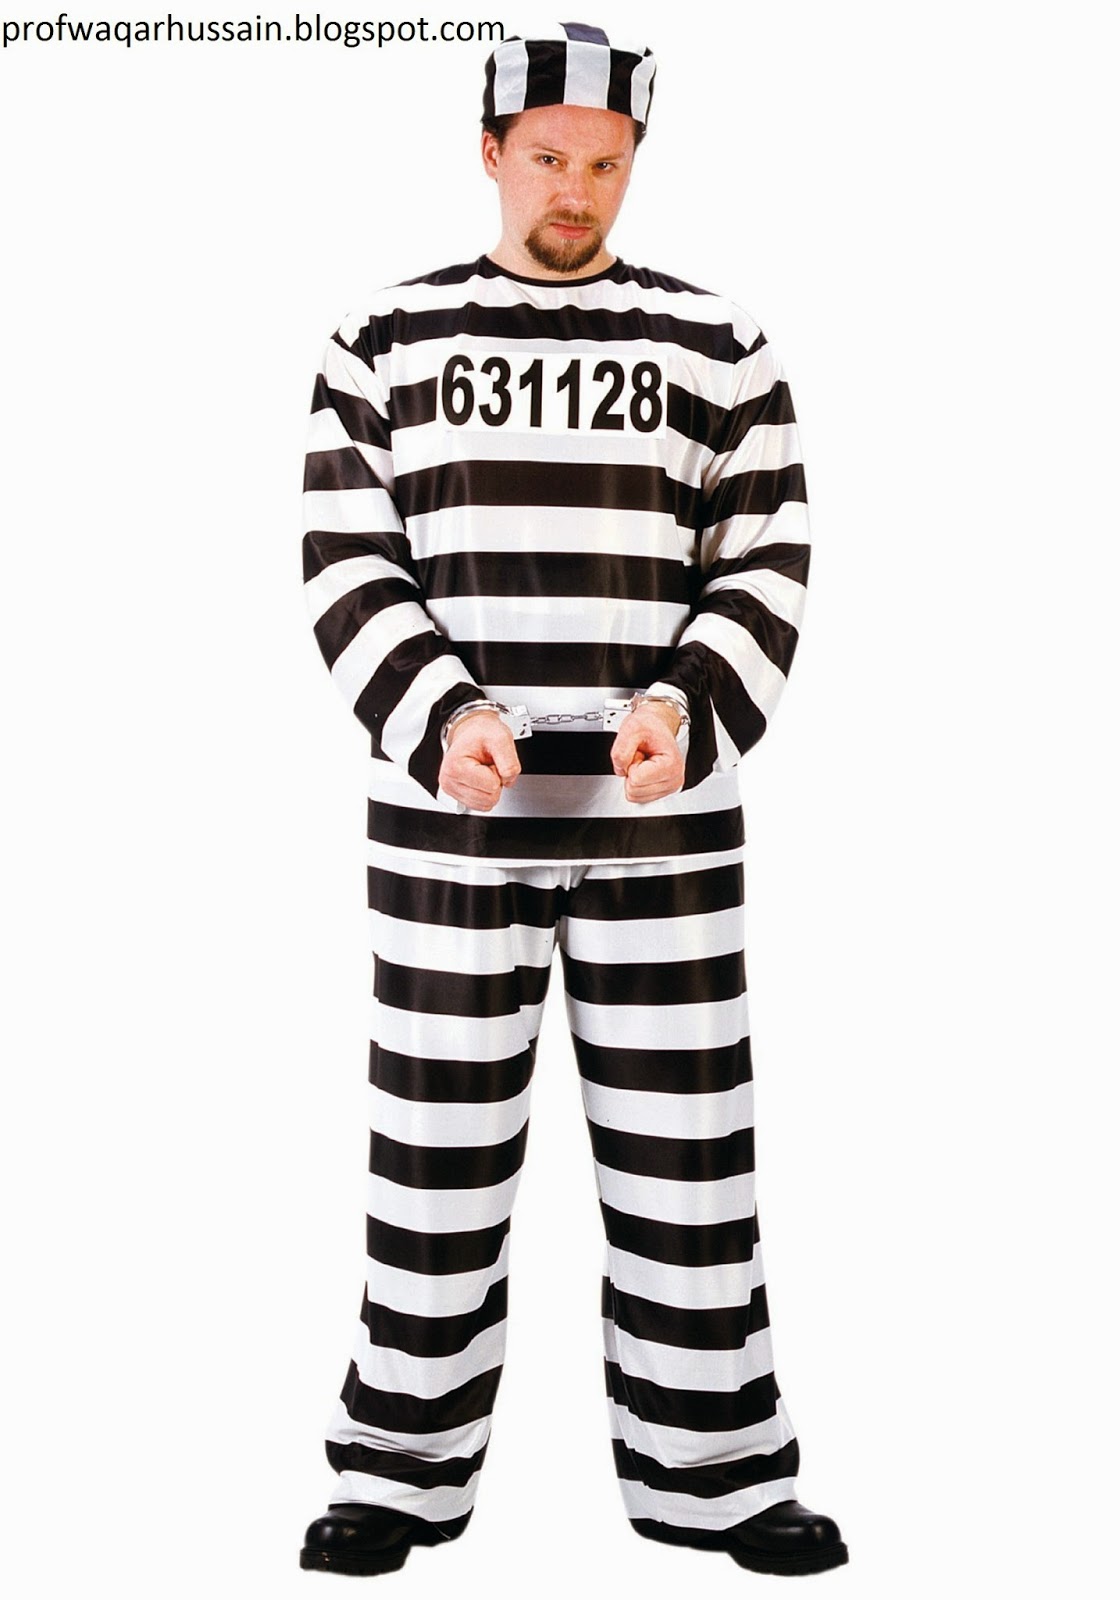 guilty-prisoner-costume.jpg